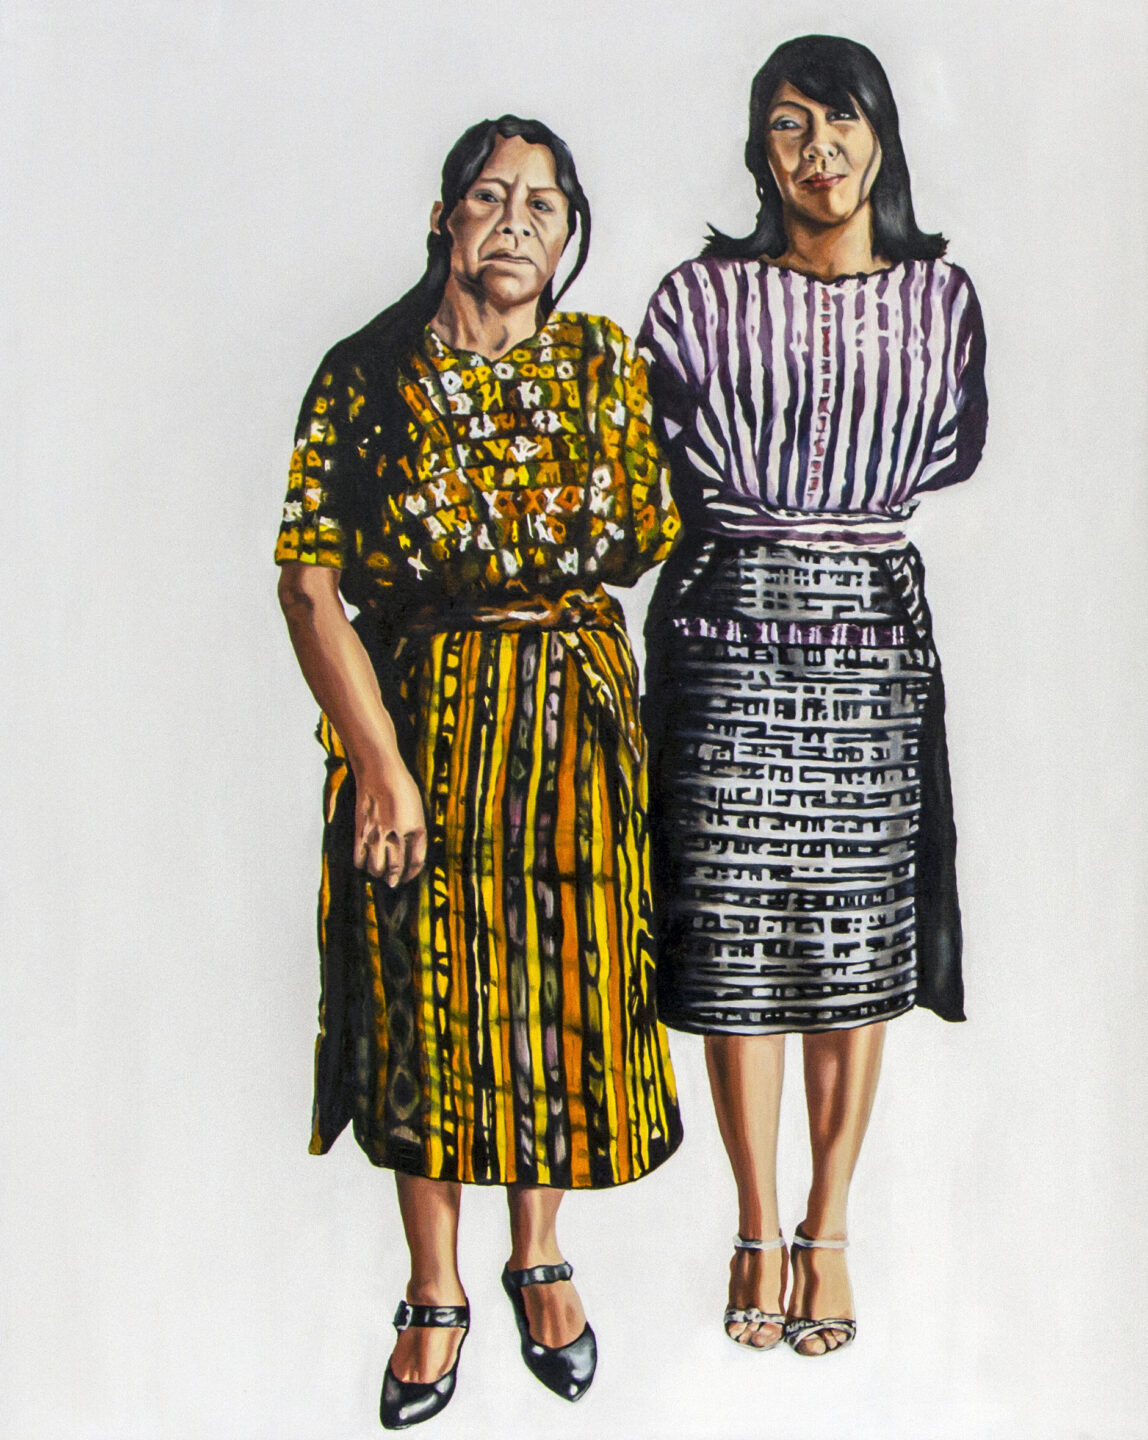 Pintura figurativa de Marilyn Boror Bor que mostra duas mulheres sobre fundo branco, uma mais baixa usando um vestido em verde e amarelo e a outra mais jovem e alta, usando um vestido roxo com listras brancas. As duas parecem ter uma relação íntima, como mãe e filha.